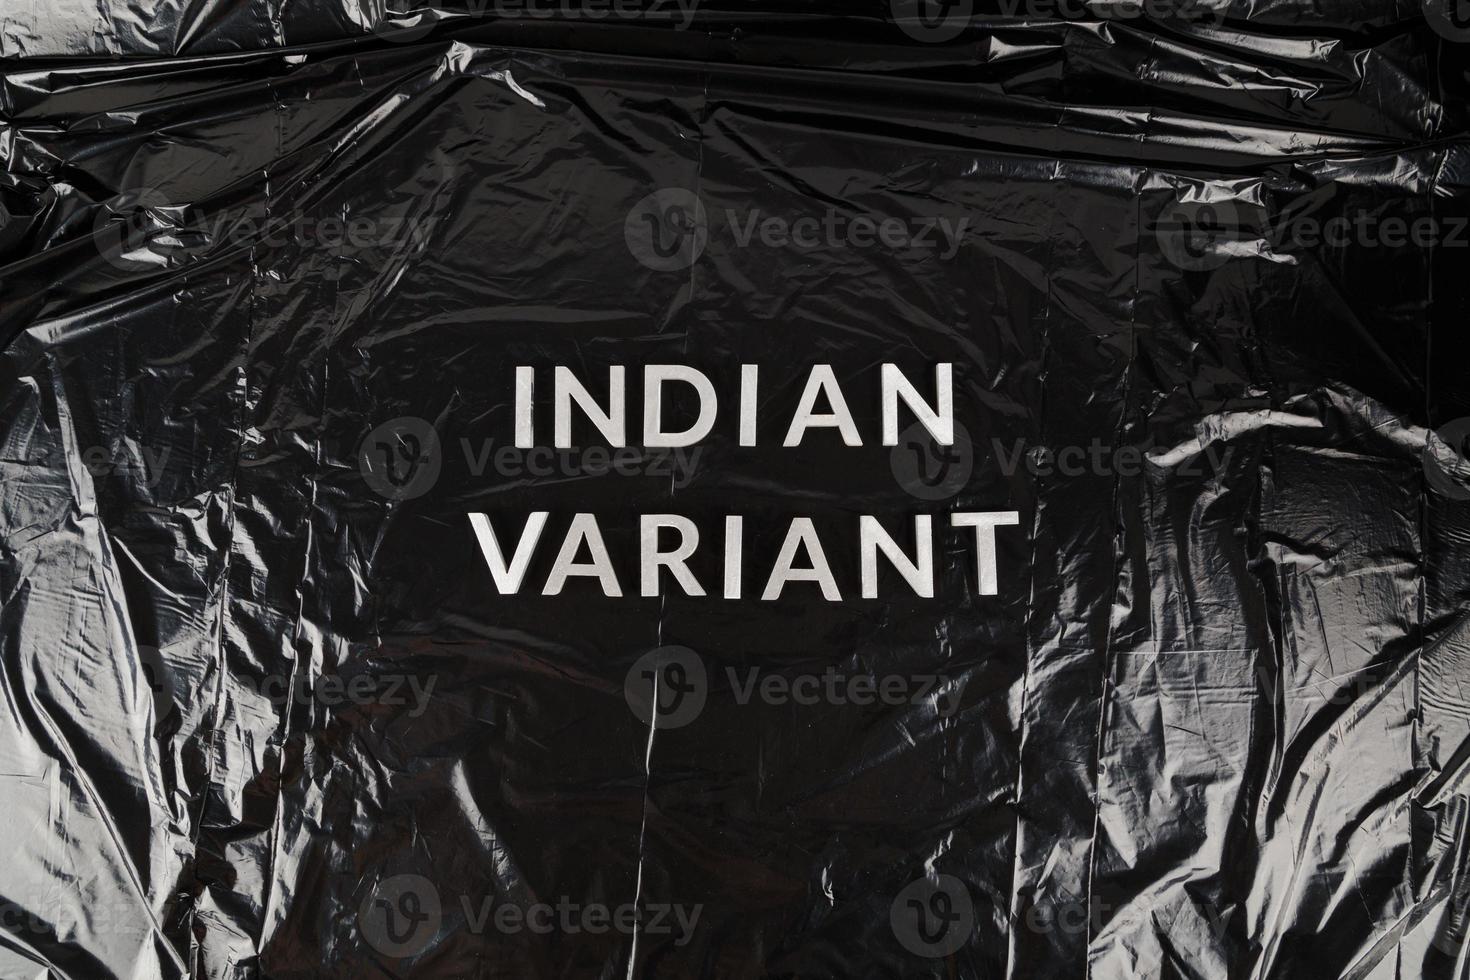 woorden Indisch variant gelegd met zilver metaal brieven Aan verfrommeld zwart plastic zak achtergrond foto